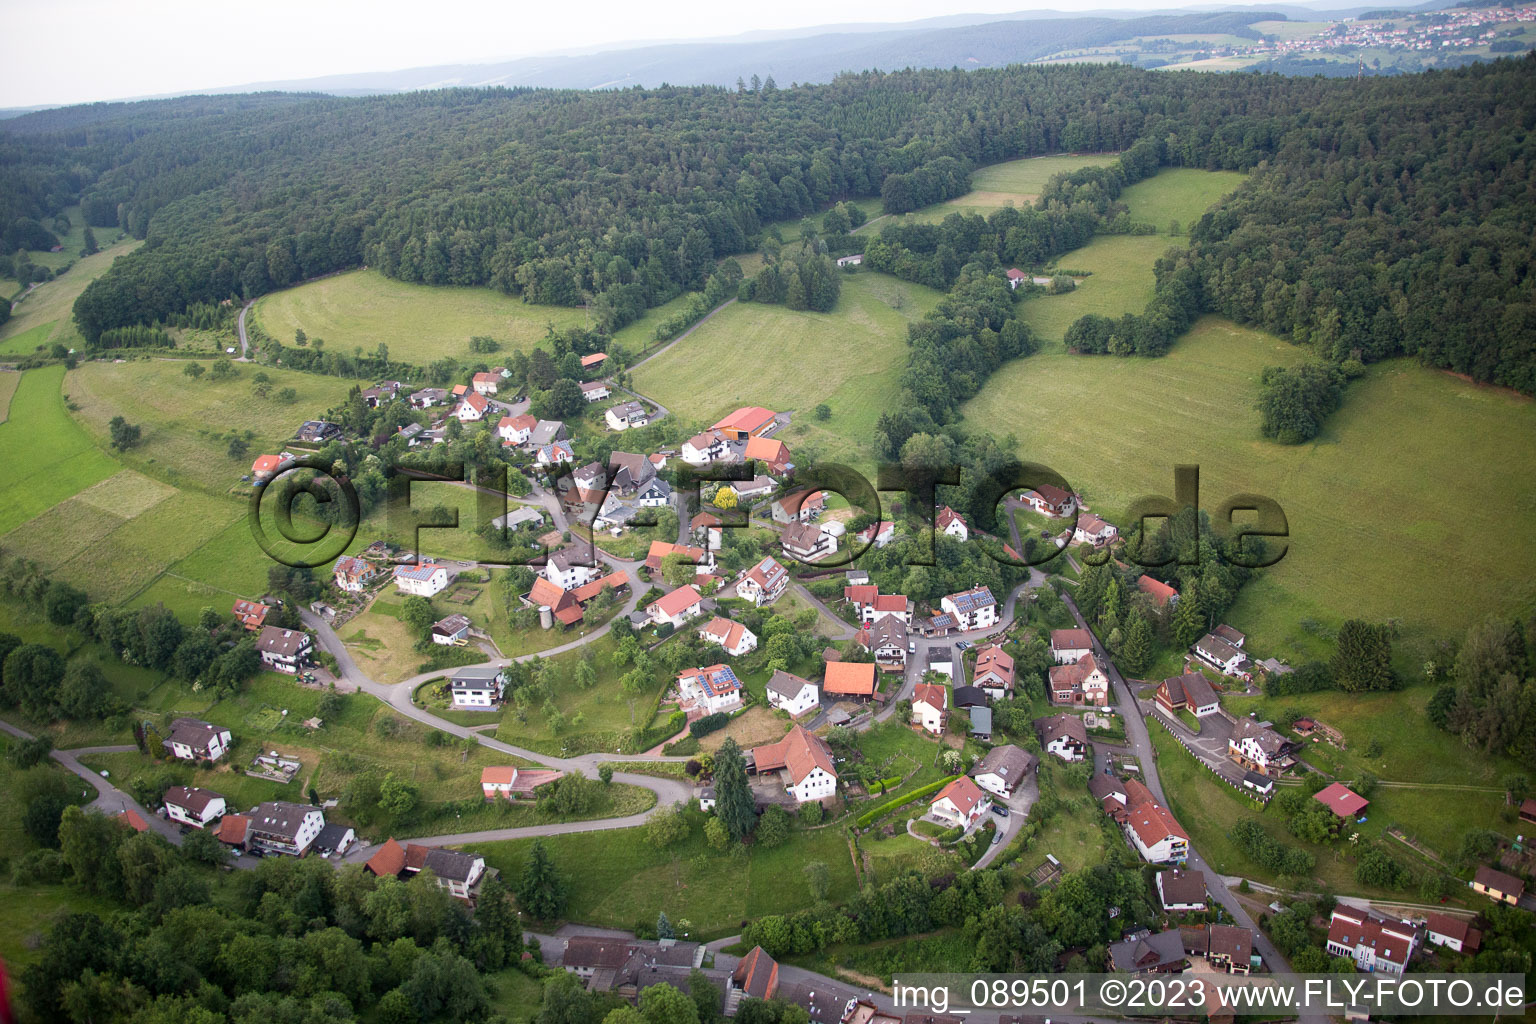 Brombach im Bundesland Baden-Württemberg, Deutschland von der Drohne aus gesehen